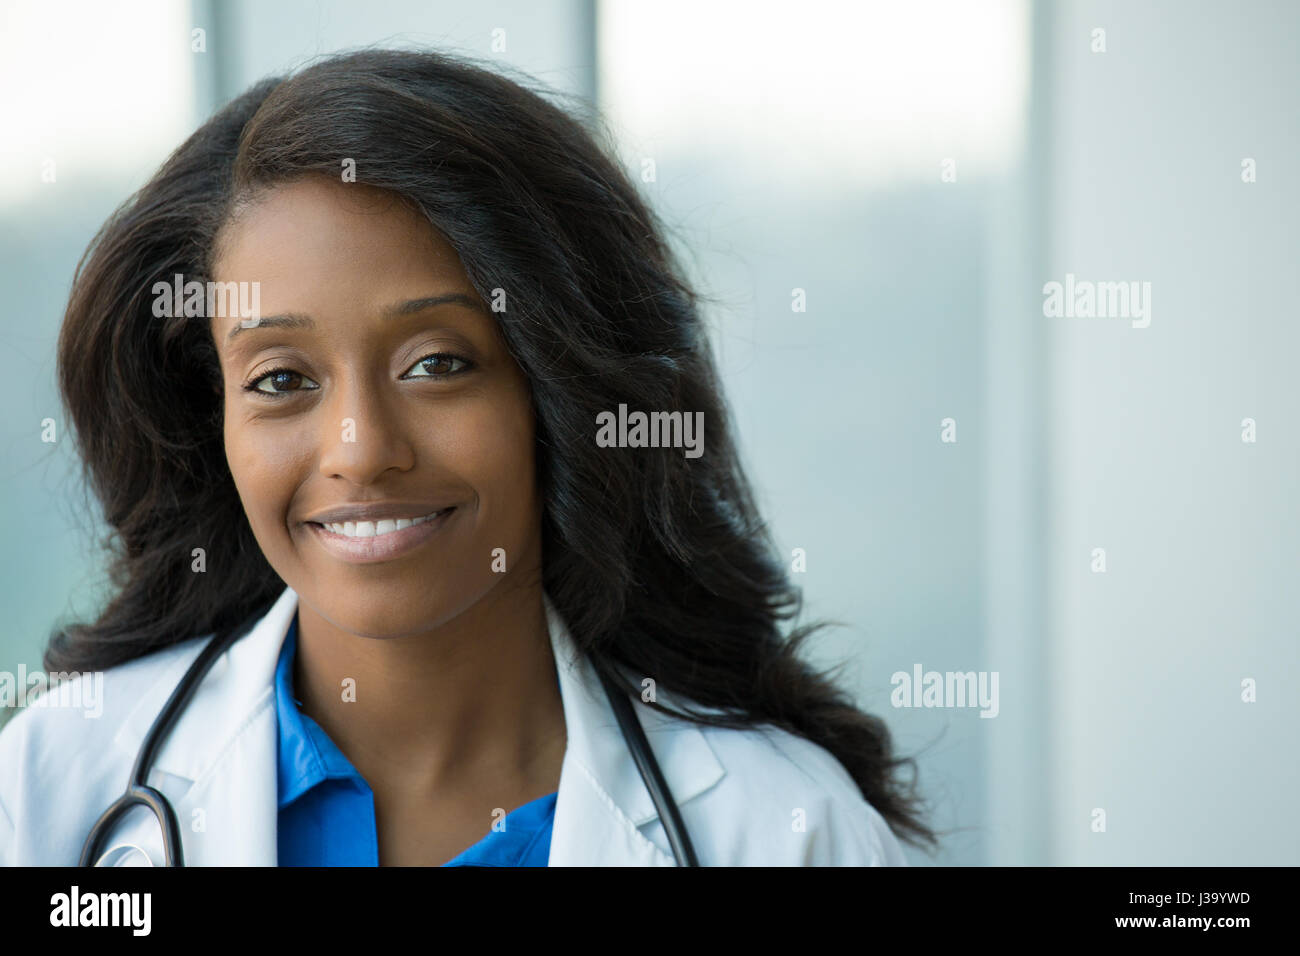 Closeup portrait of smiling confident female amical, professionnel de santé avec manteau de laboratoire, stéthoscope, les bras croisés. Hôpital clinique isolé retour Banque D'Images